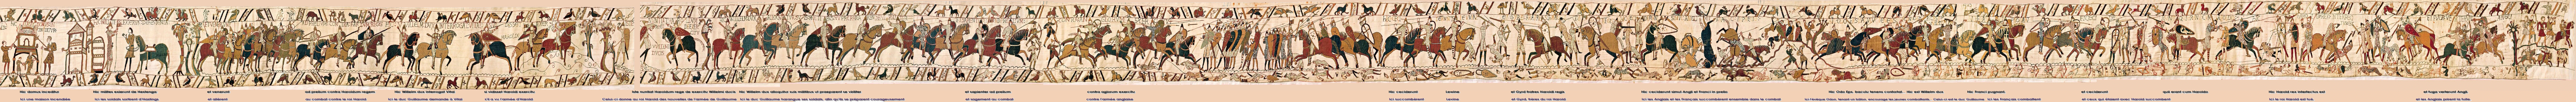 tapisserie de Bayeux 3